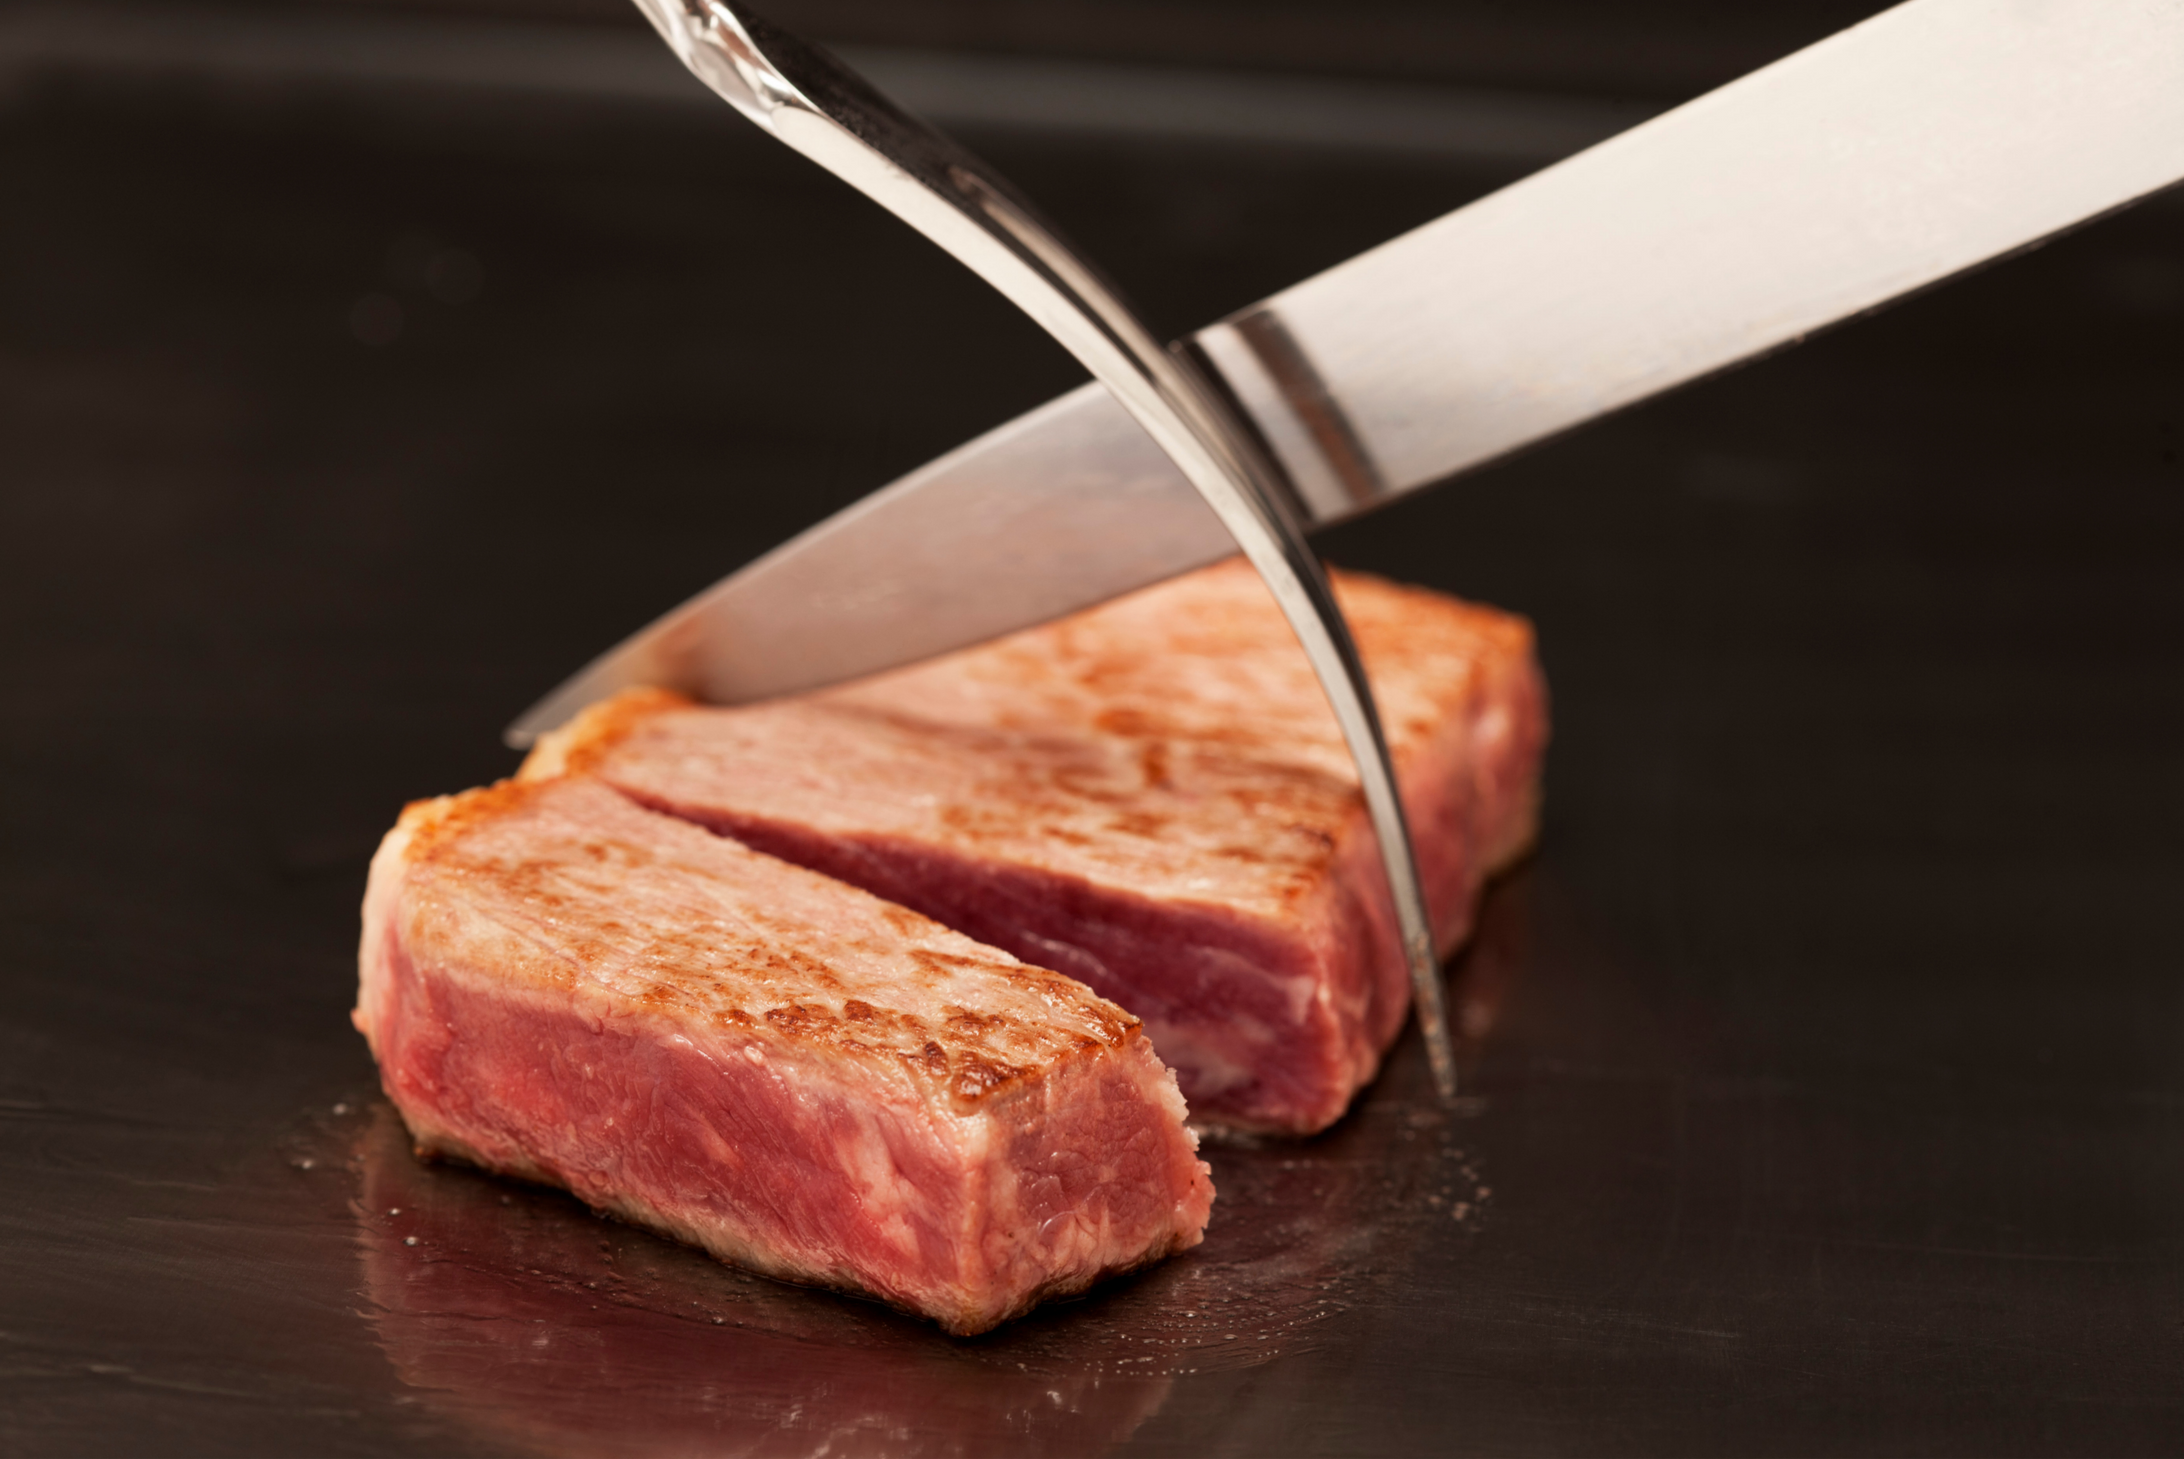 日本最昂贵的食材,地球上最稀有的牛肉: 和牛! – Eat Pro Japan